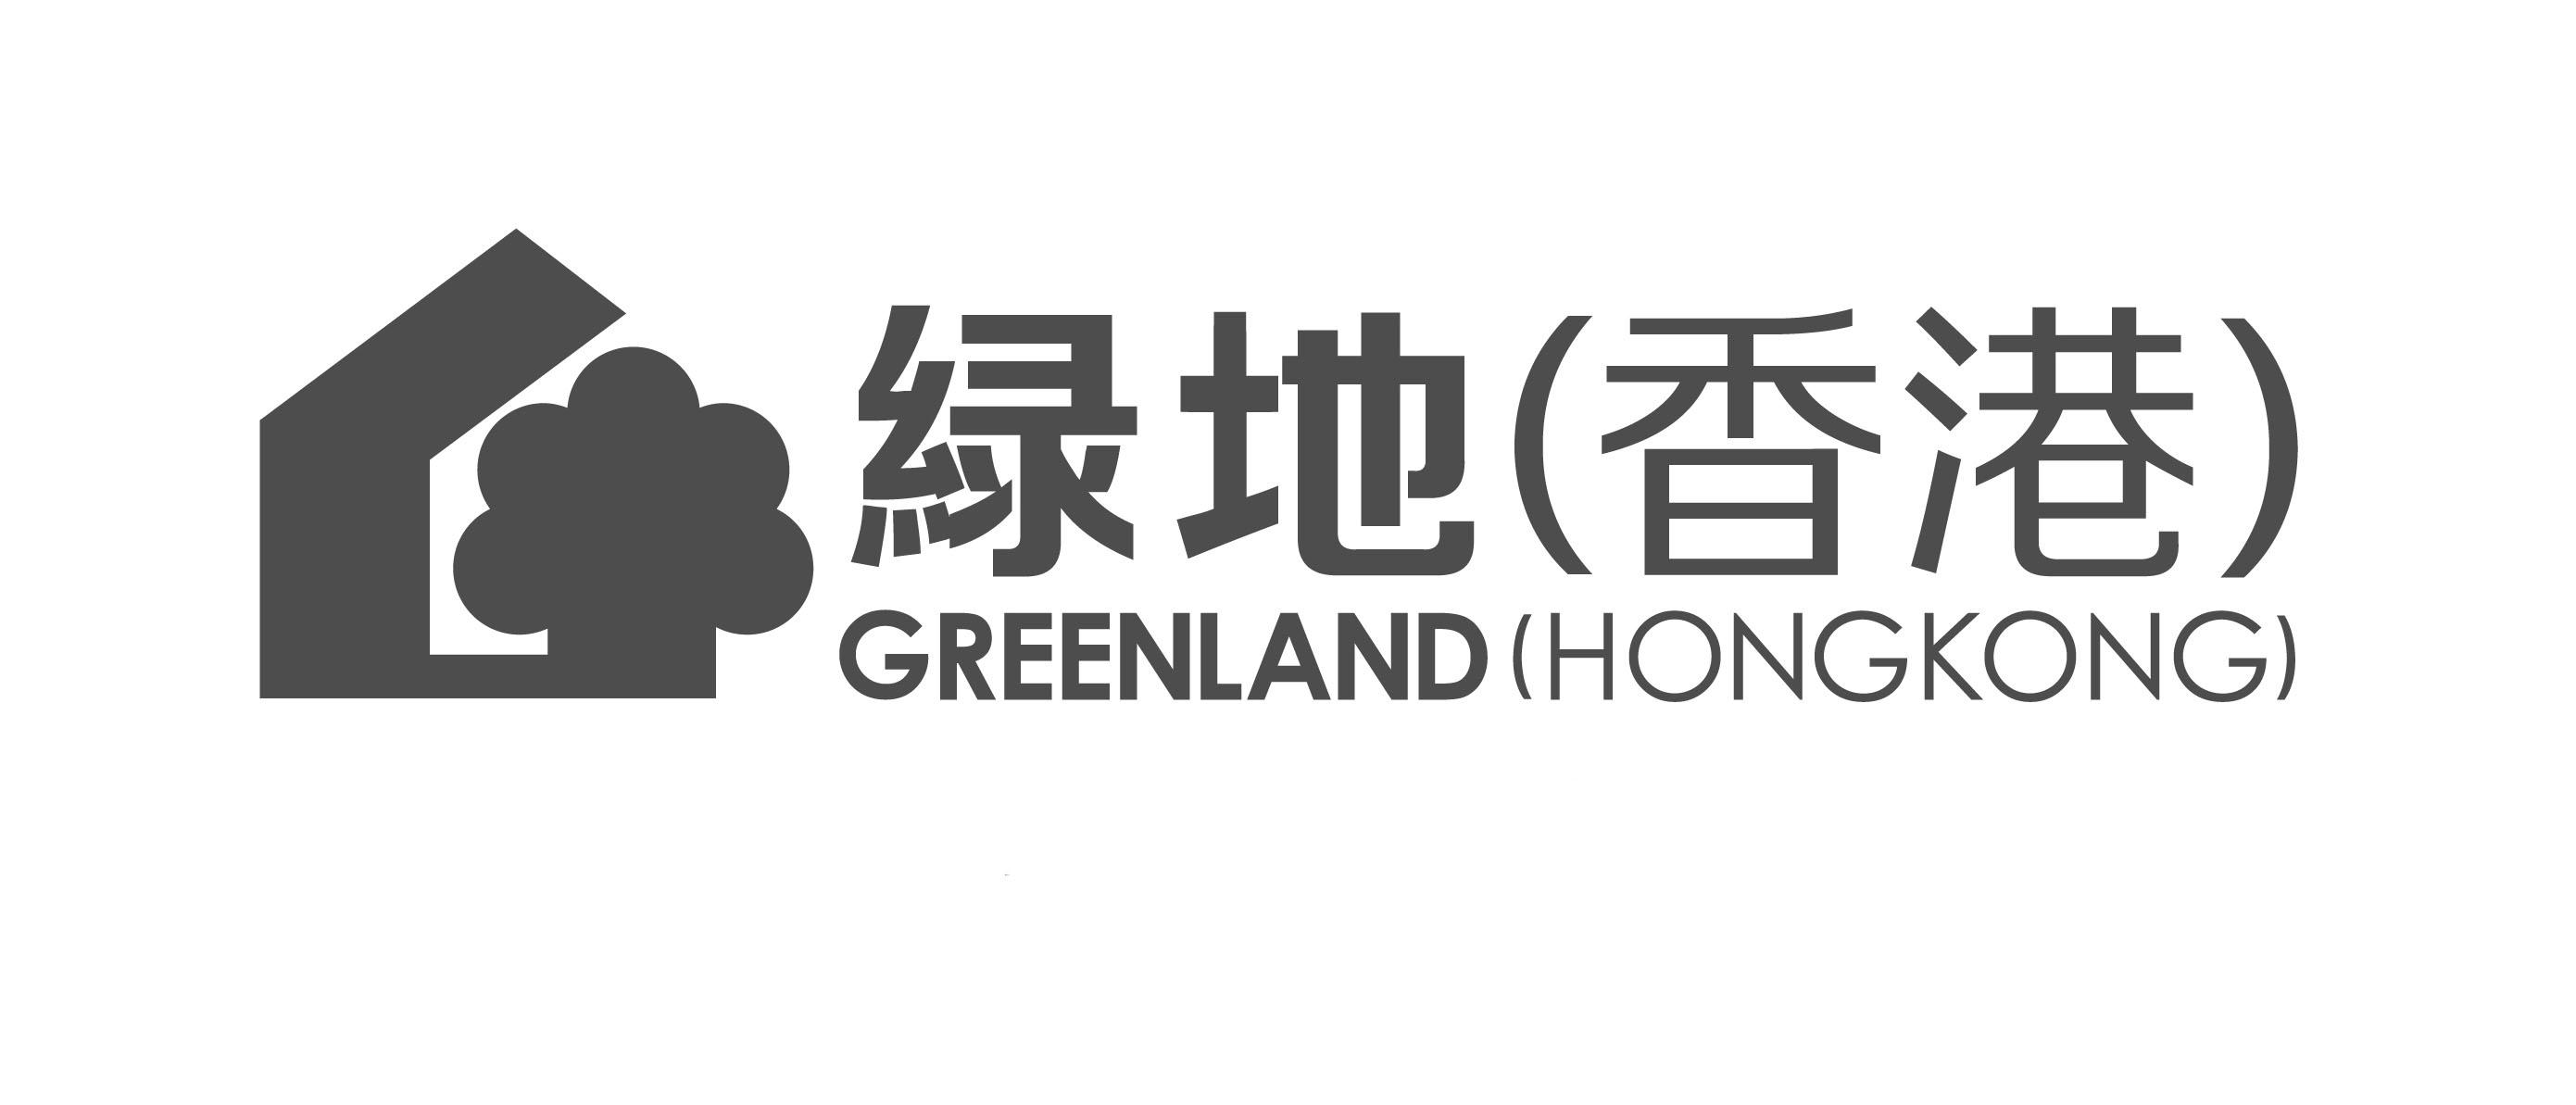 绿地香港2014年全年合约销售额达人民币129.